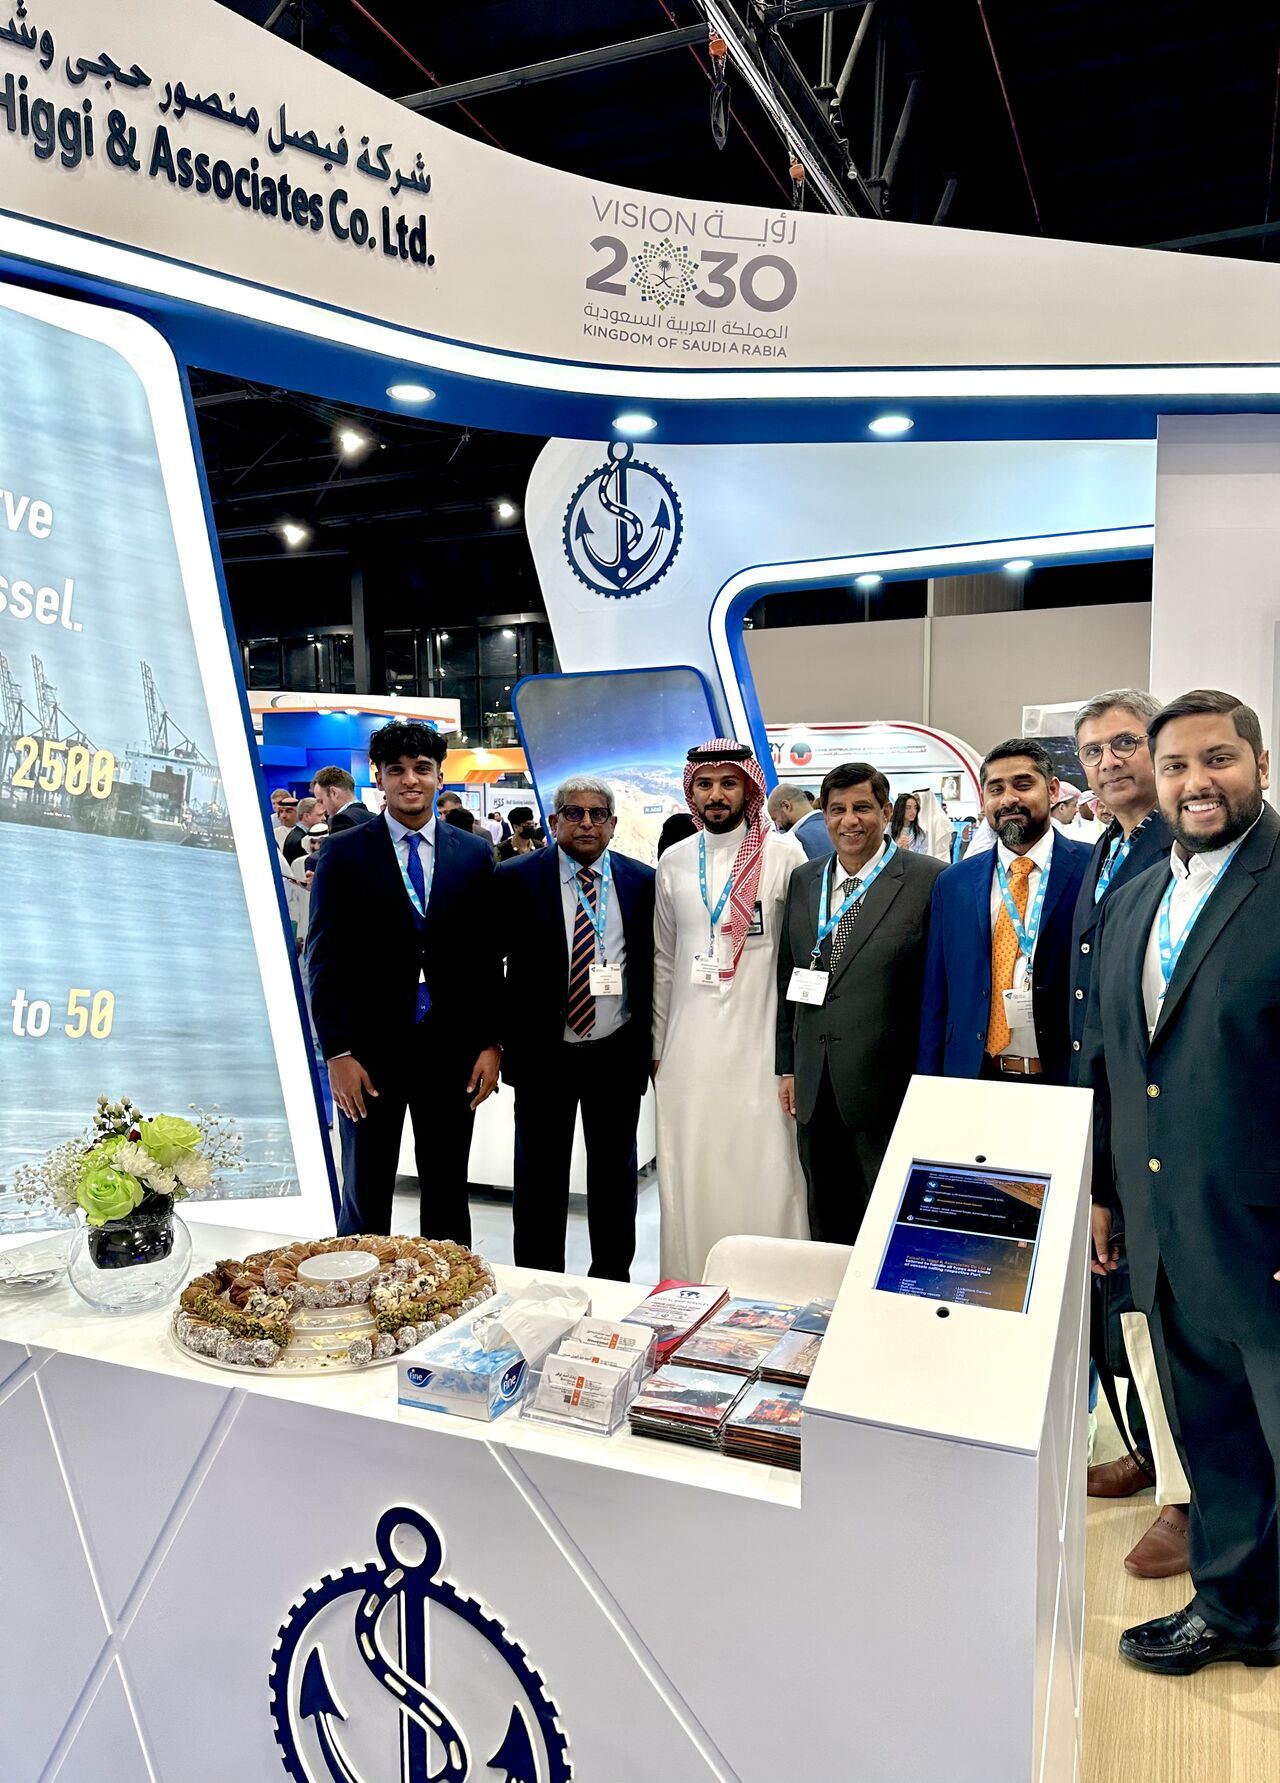 Team GSS at the Saudi Maritime Congress 2022 in Dammam, Saudi Arabia